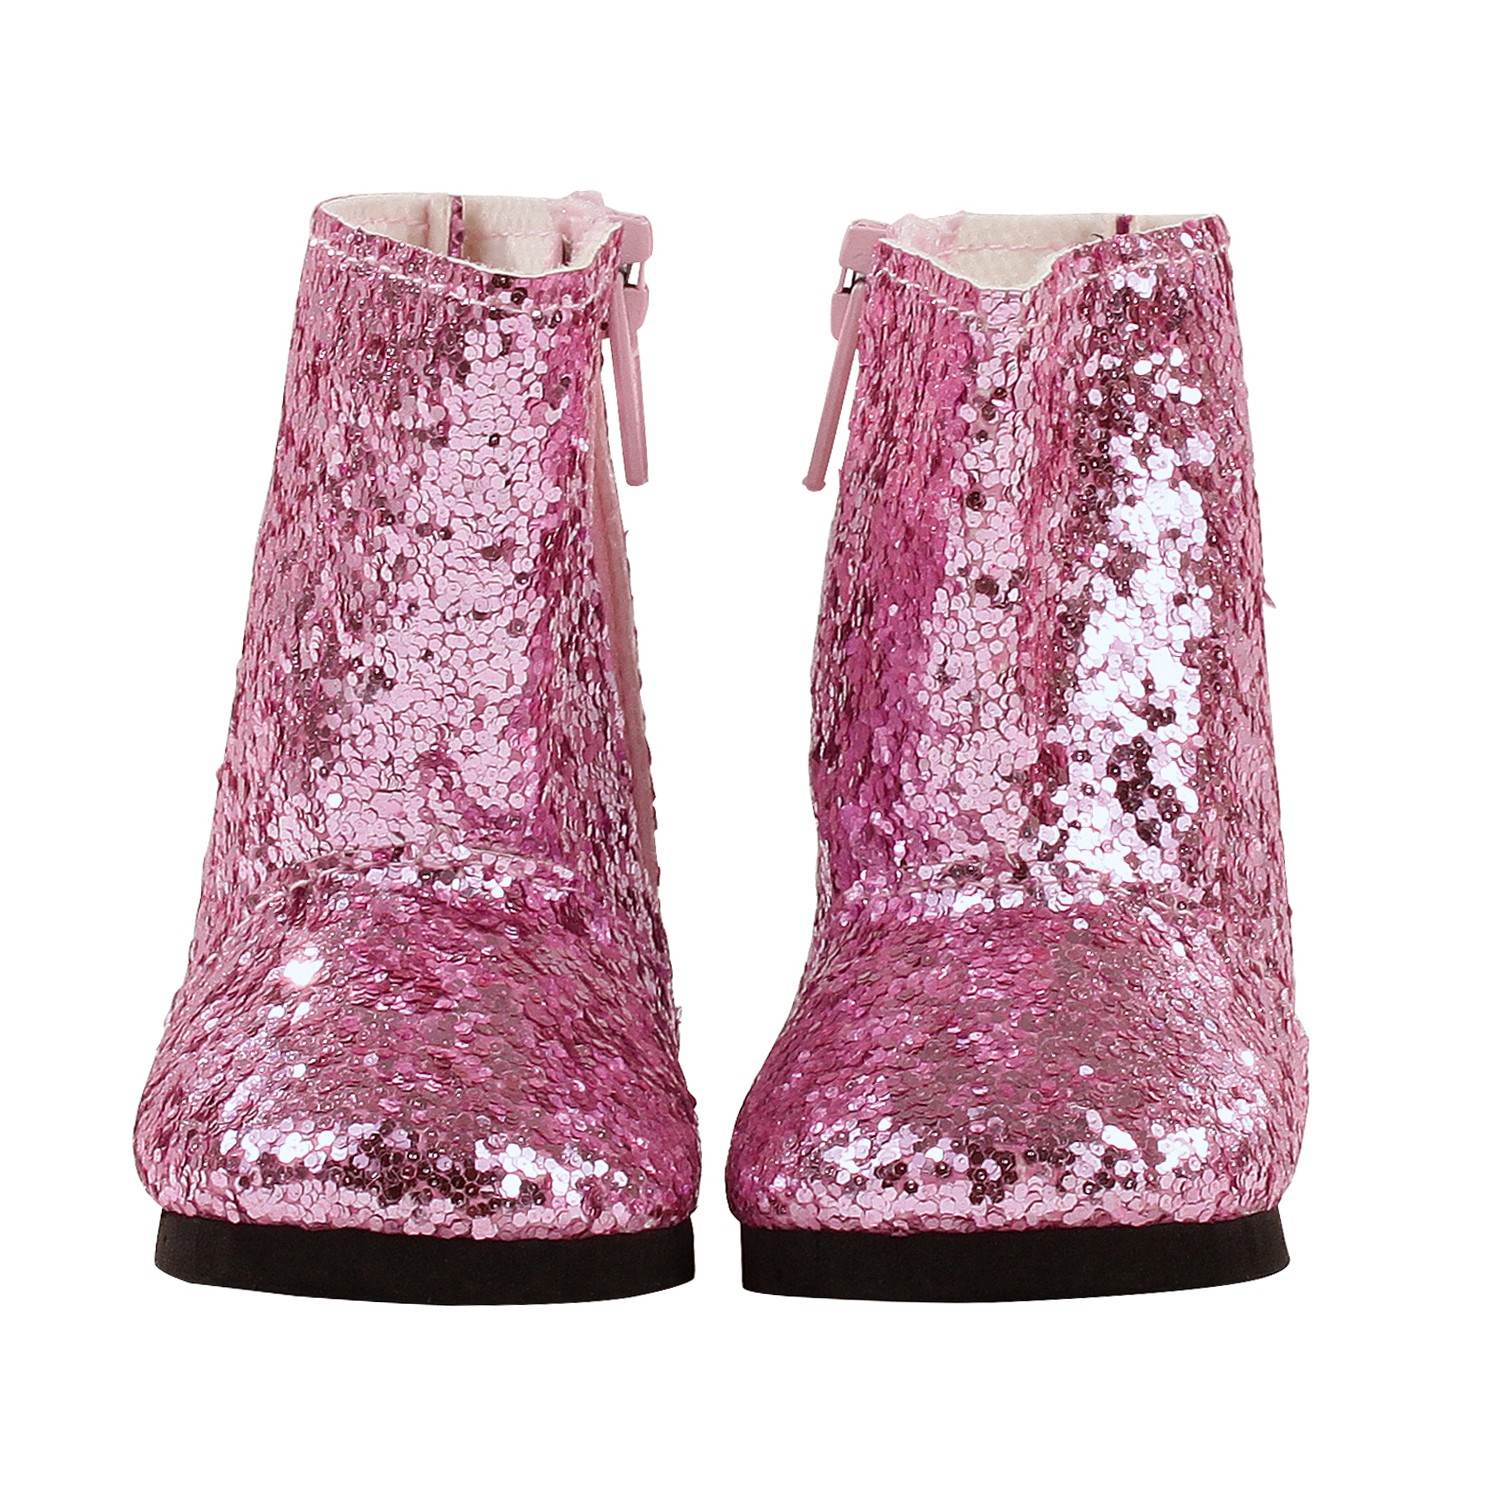 фото Одежда для кукол gotz сапоги с блестками, розовые, 42-50 см 3402537